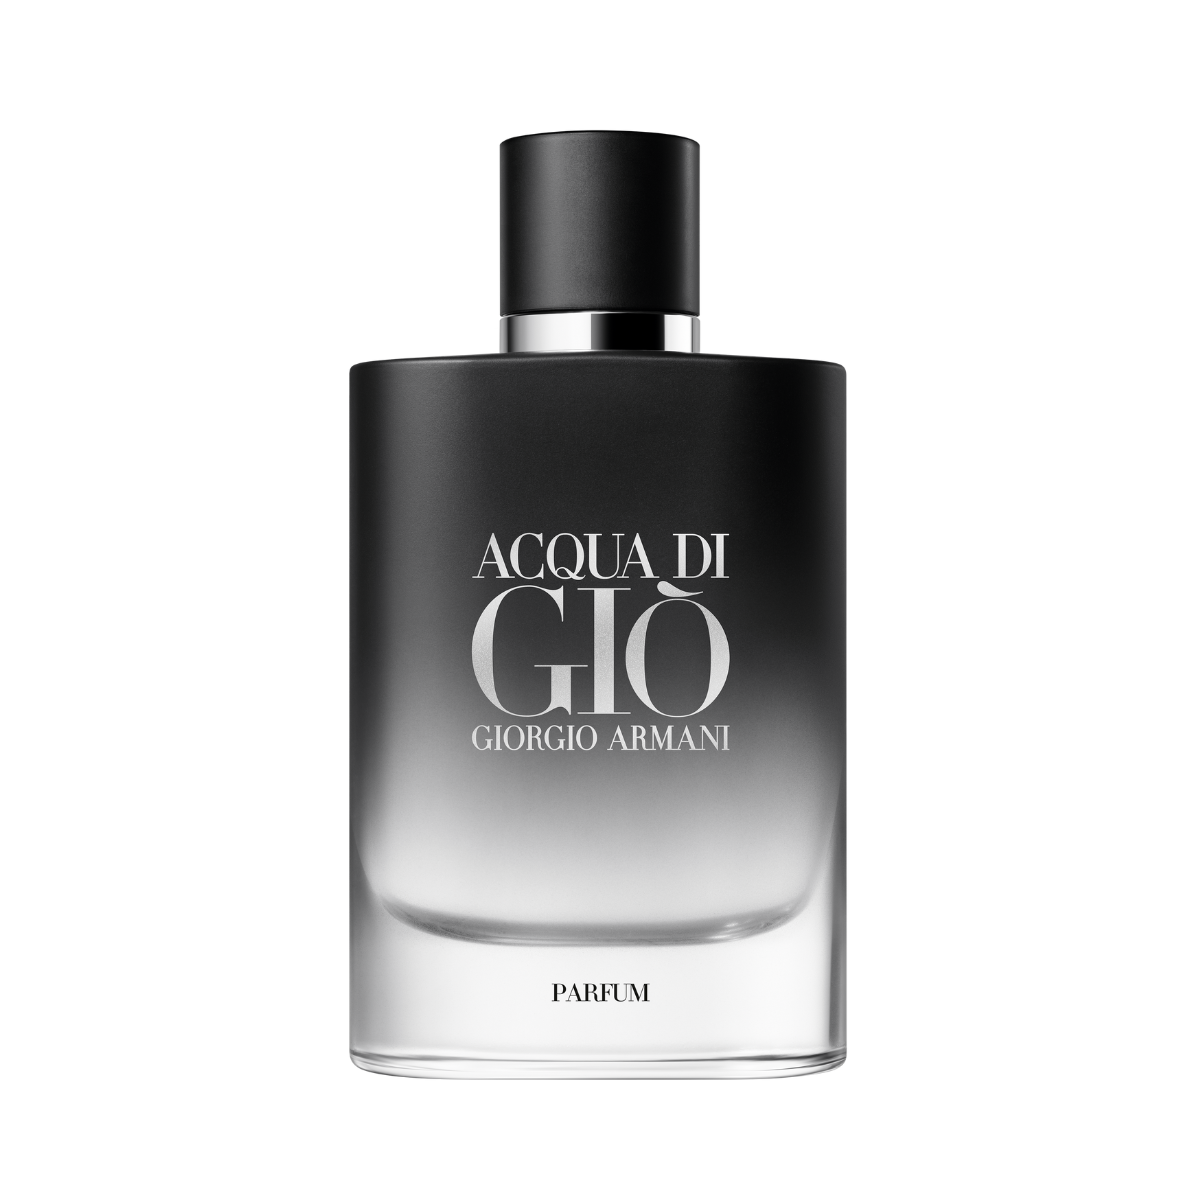 Giorgio Armani - Acqua Di Gio Parfum (75ml)